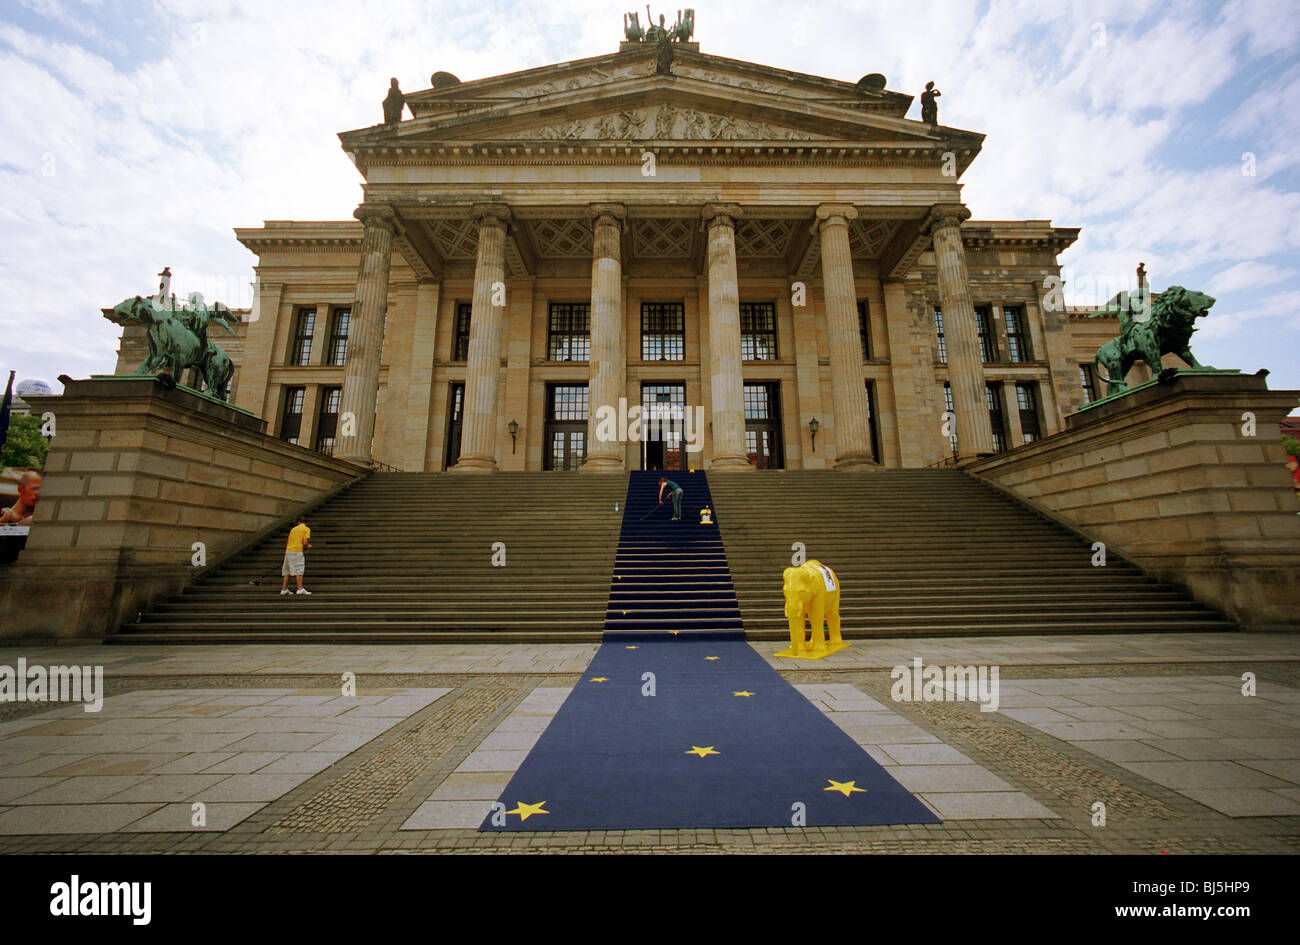 Tapis bleu avec des étoiles jaunes (Europe) tapis menant au Konzerthaus de l'Genadarmenmarkt square, Berlin, Allemagne Banque D'Images